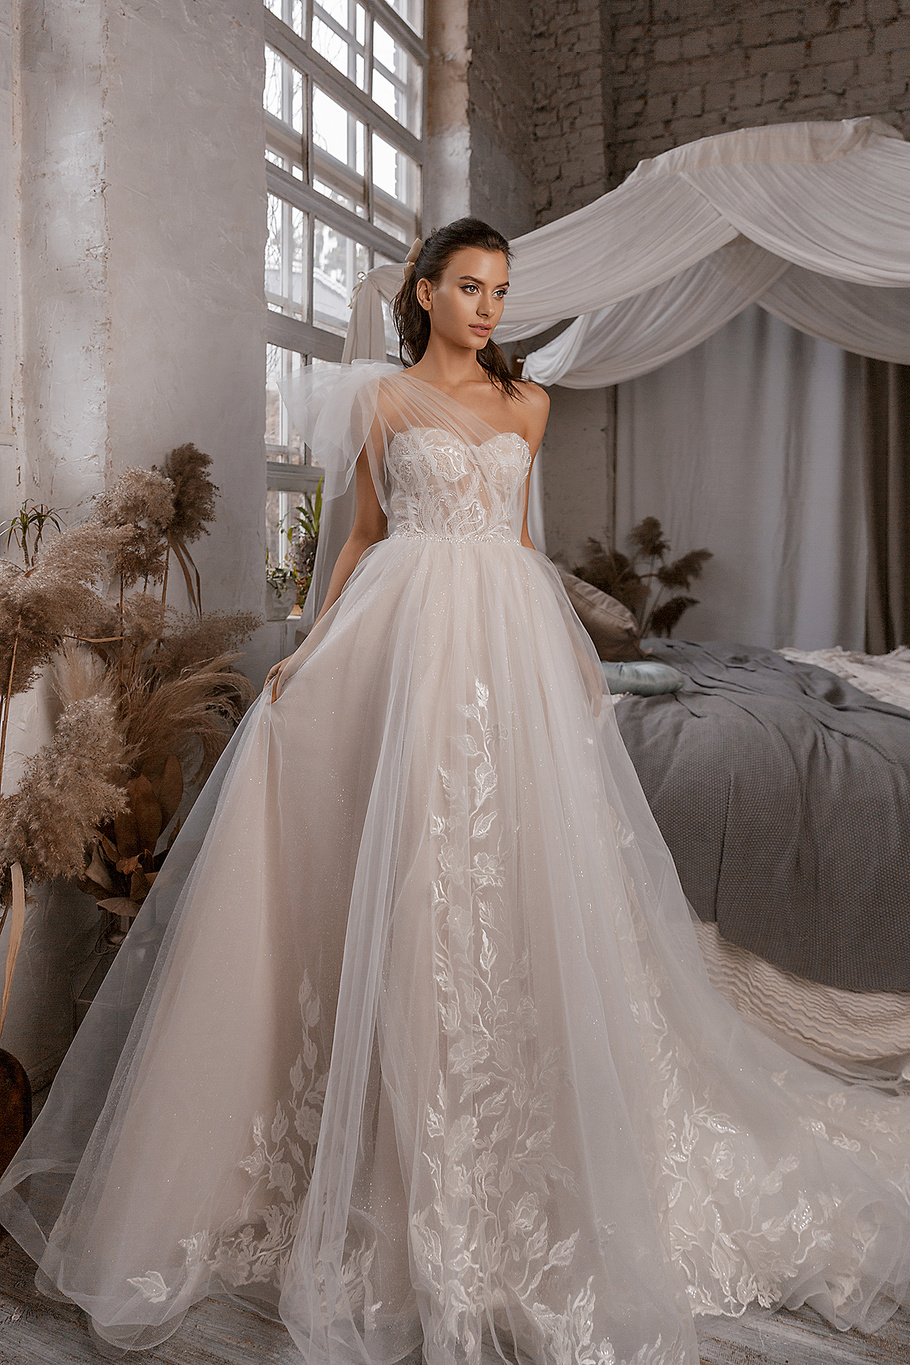 Купить свадебное платье «Ванила Скай» Ланеста из коллекции 2018 года в интернет-магазине «Мэри Трюфель»